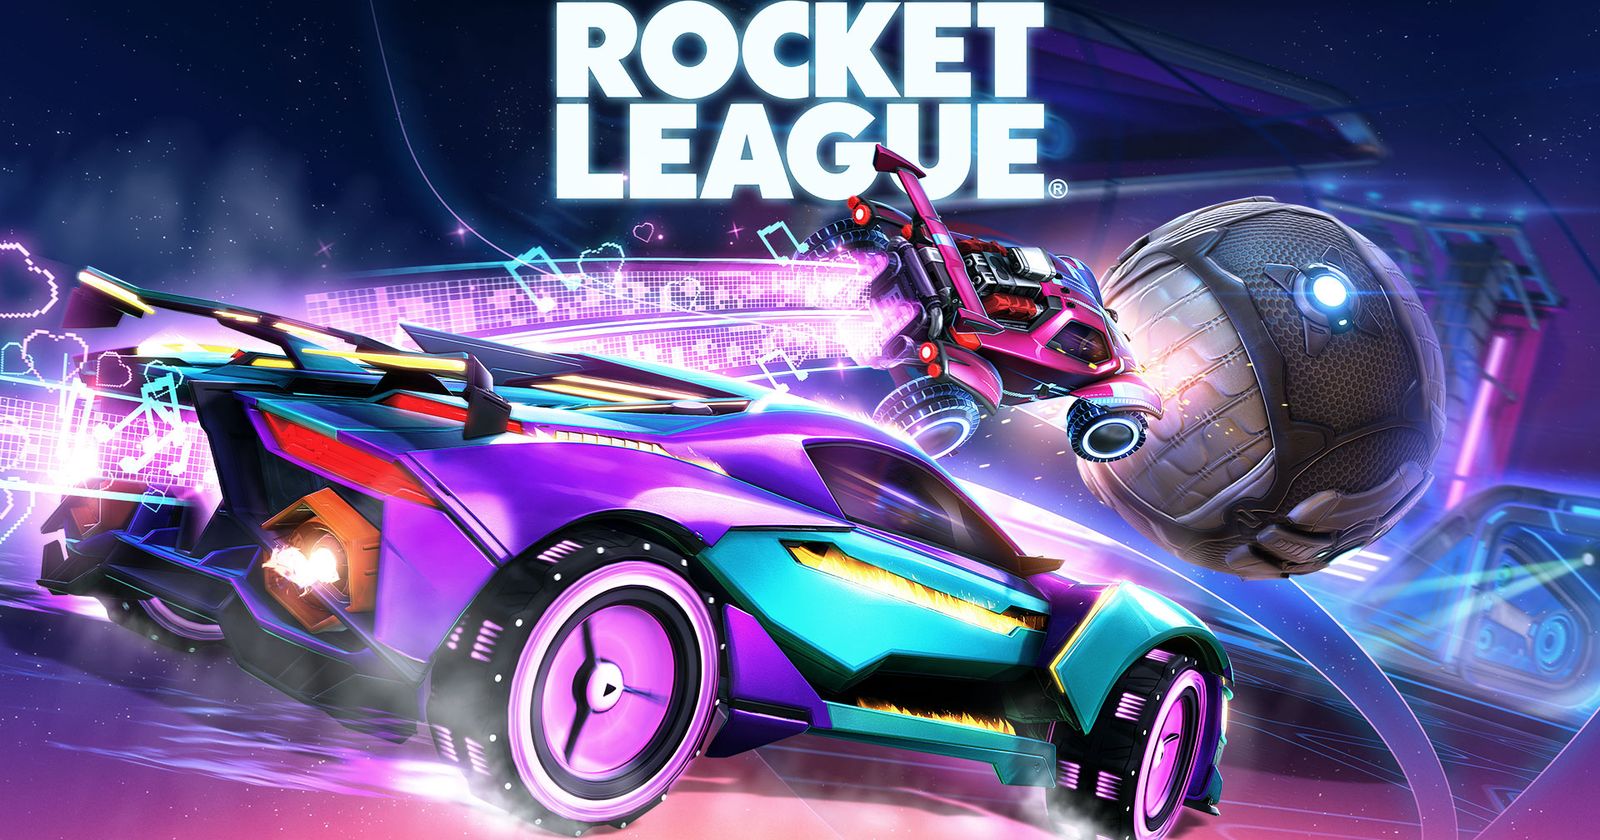 Rocket League Tournaments 2020 Schedule